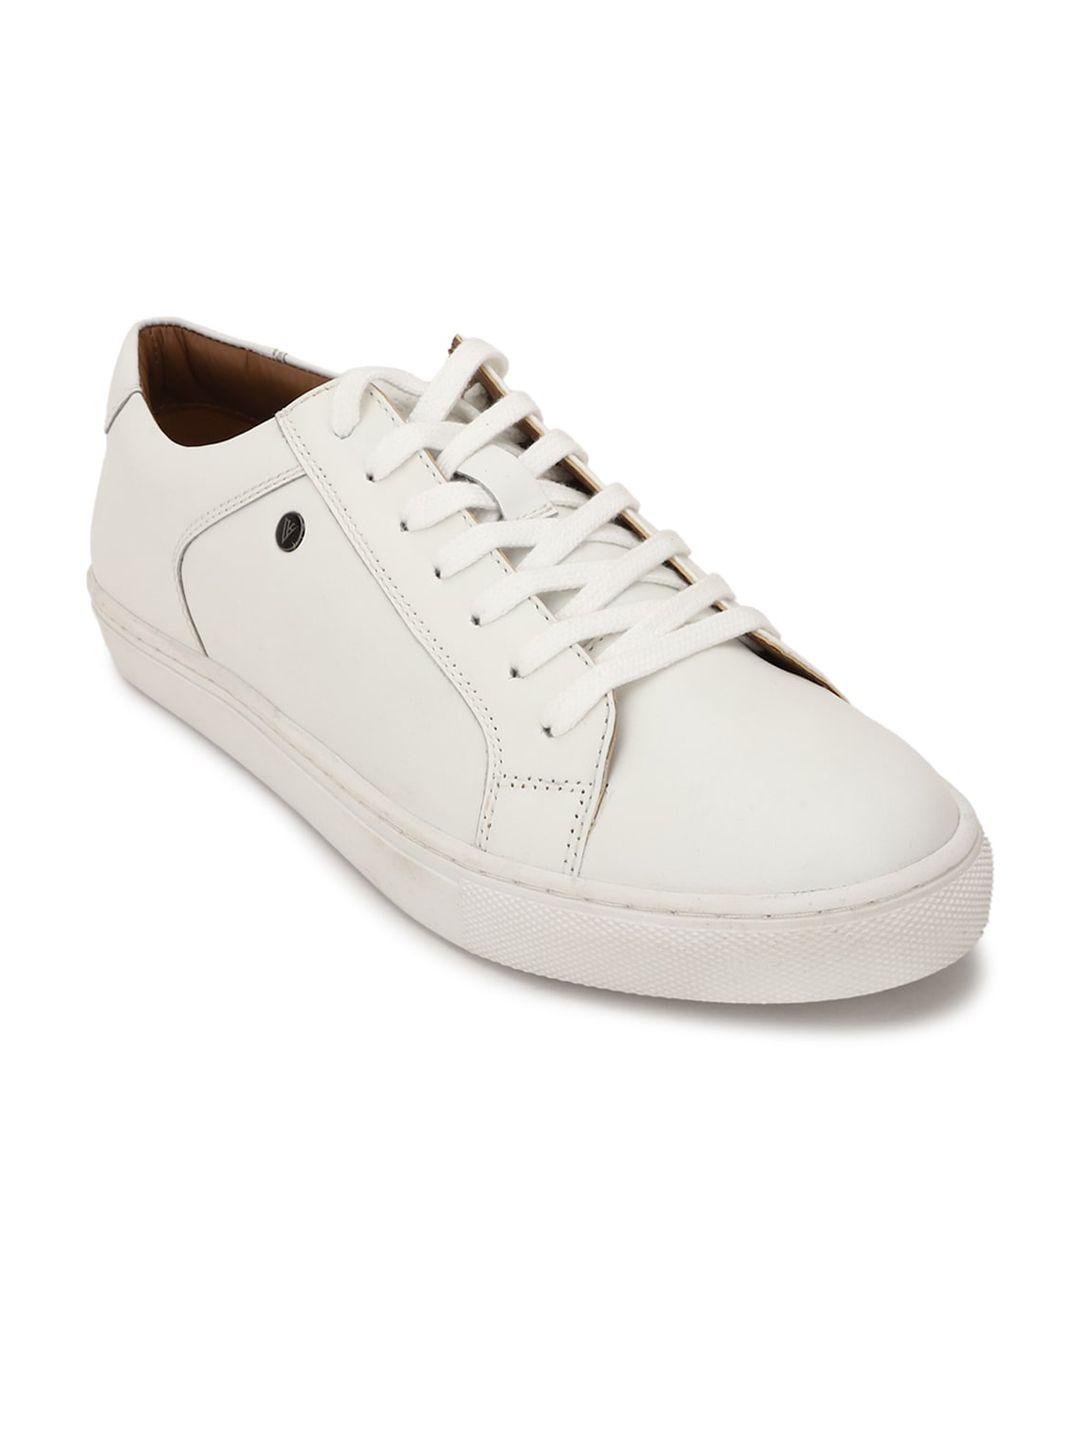 van-heusen-men-white-textured-leather-sneakers